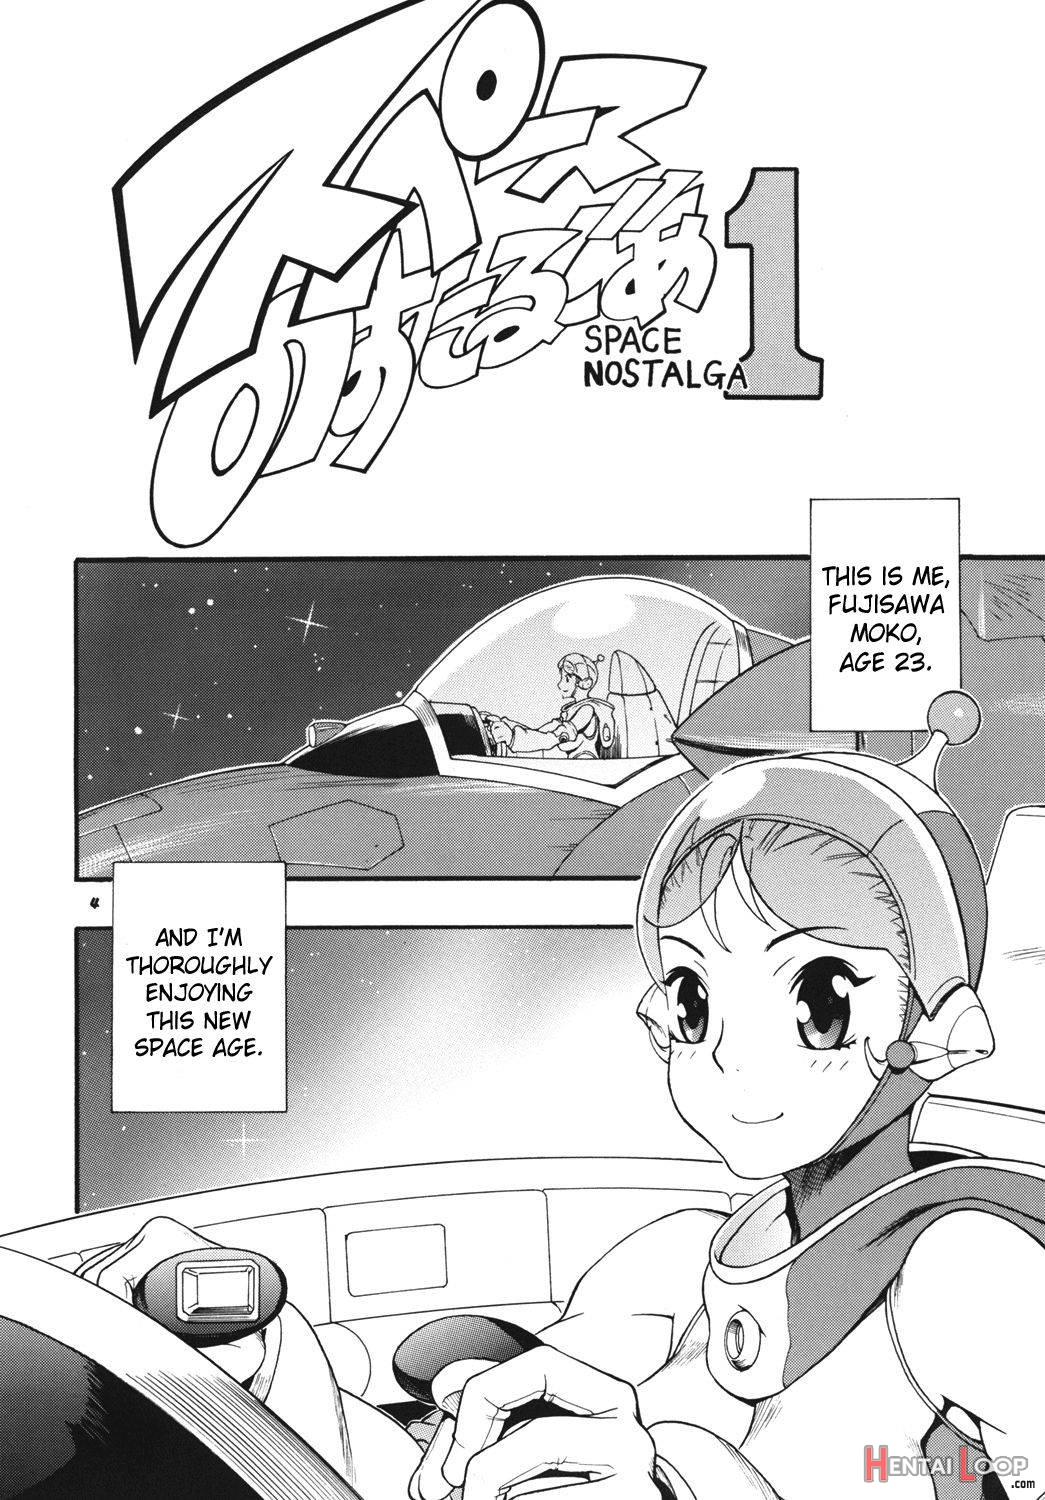 Space Nostalgia 1 page 3